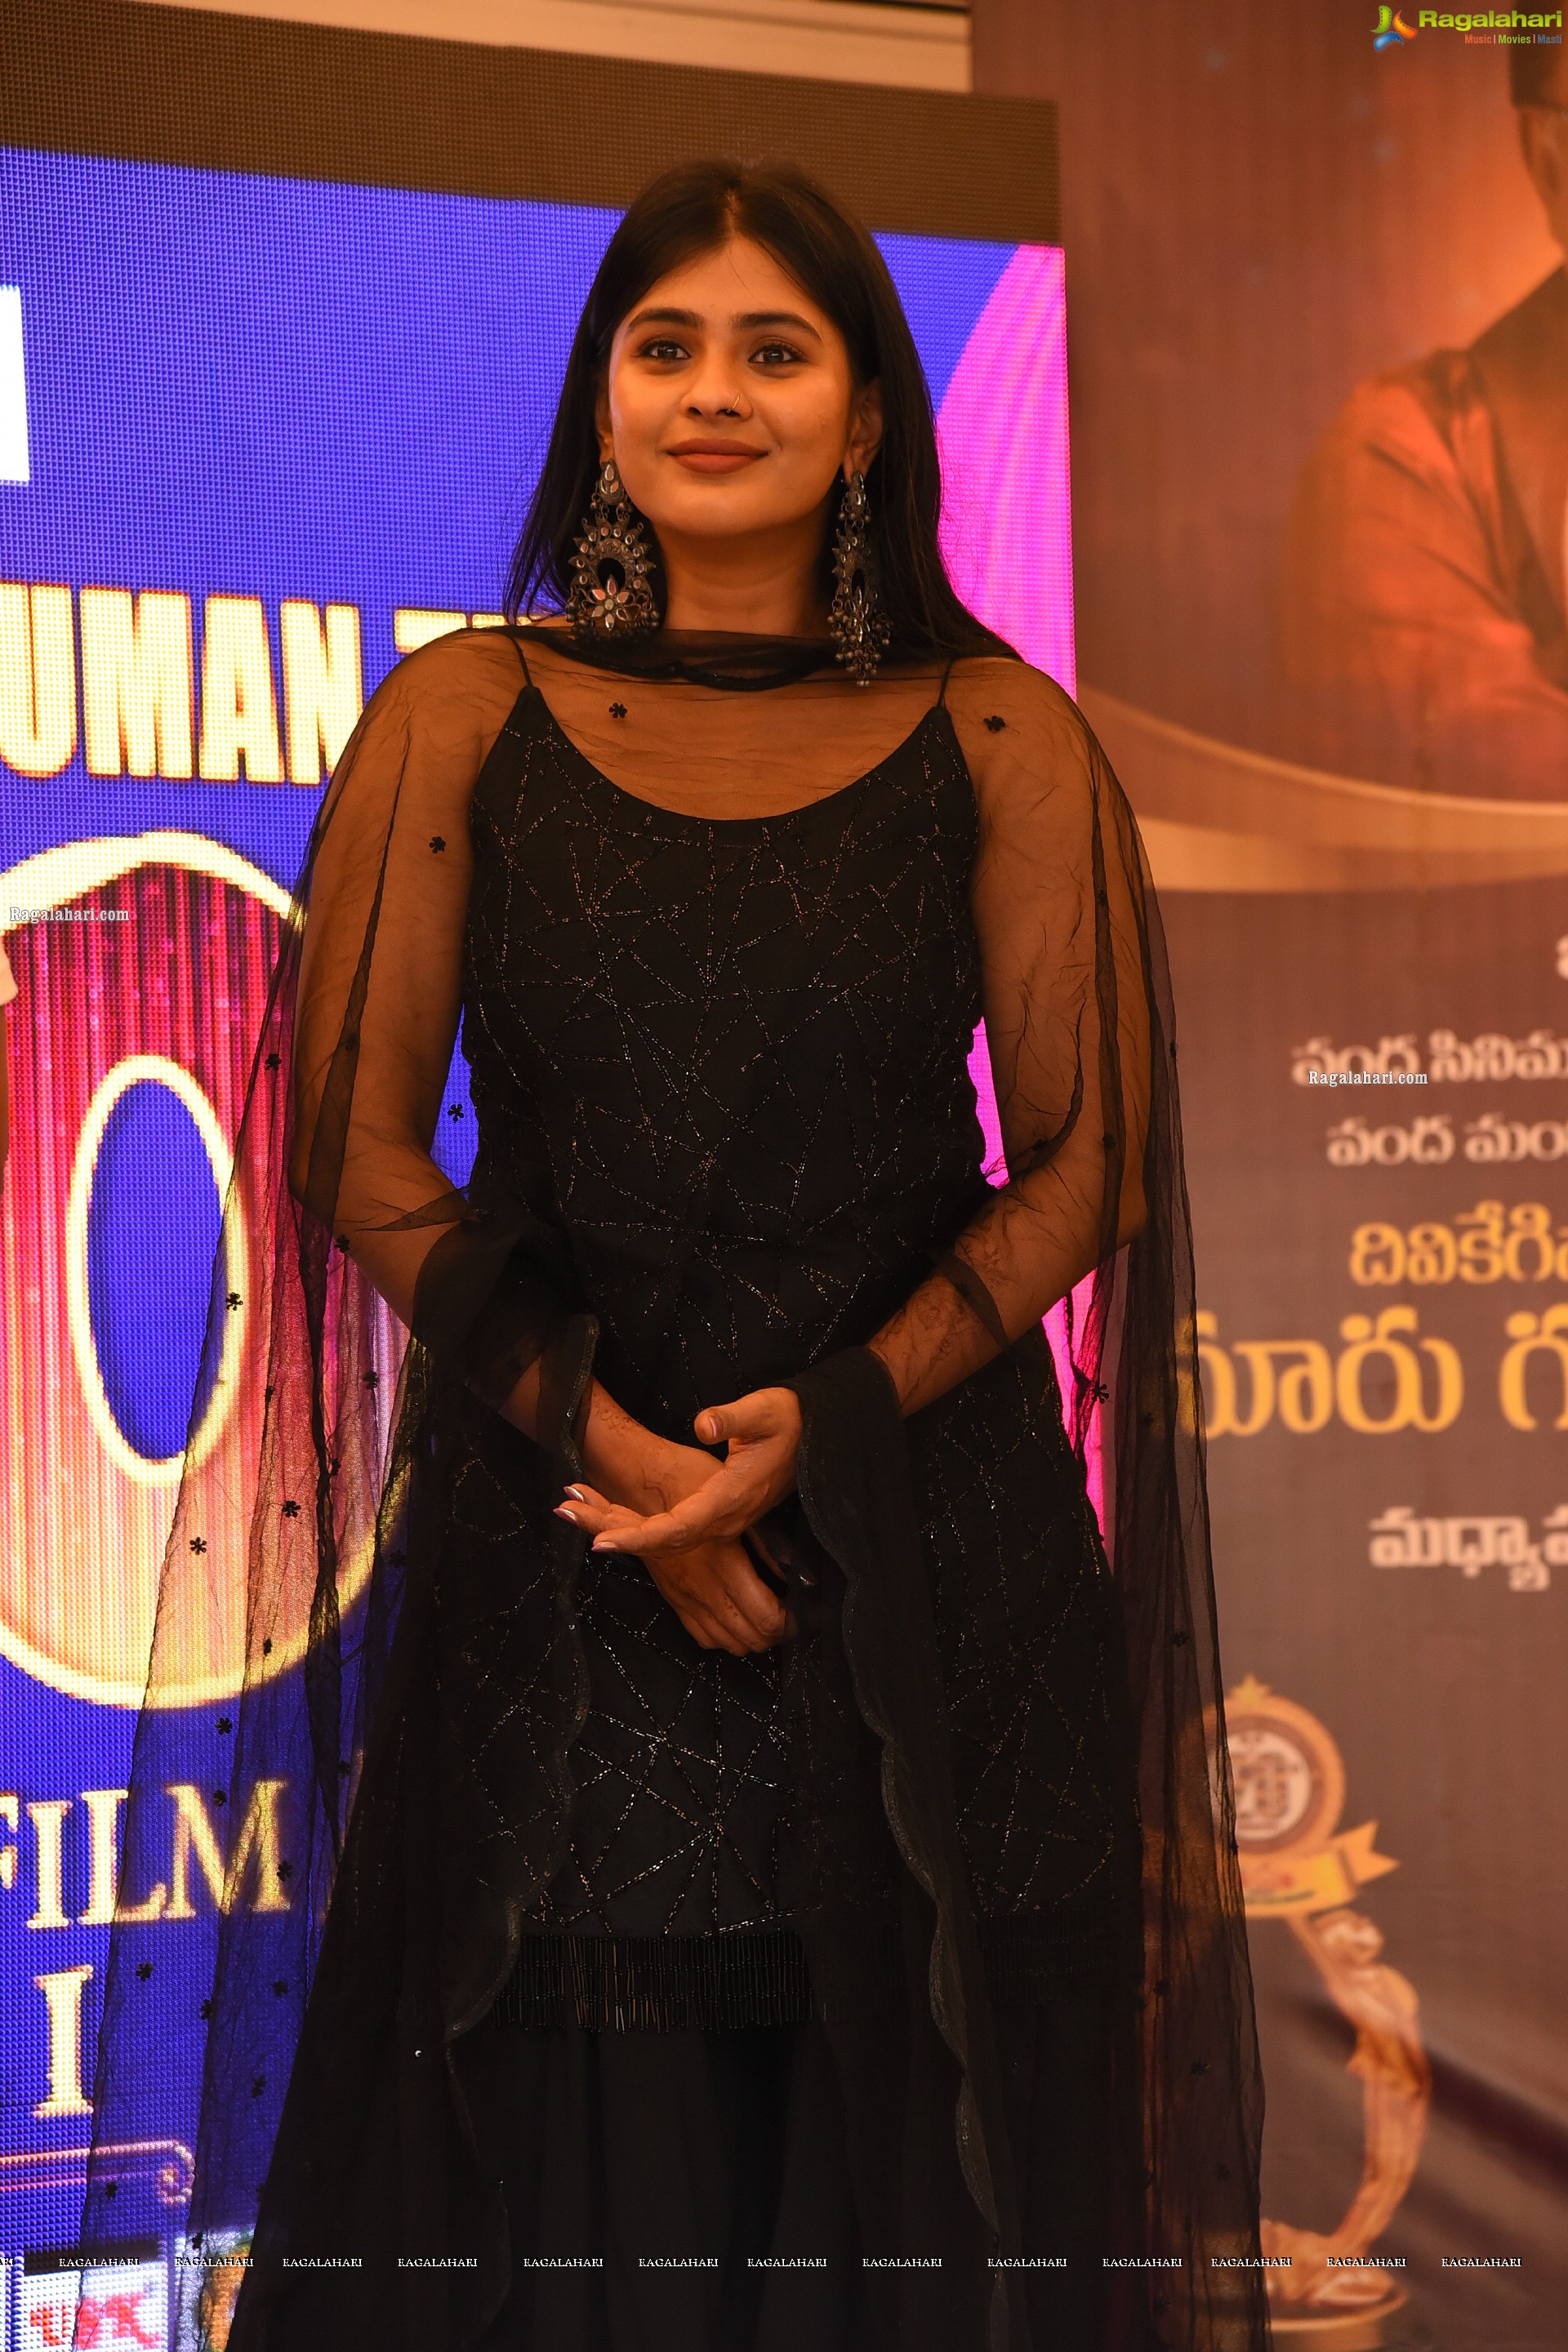 Santosham-Suman TV South Indian Film Awards 2021 Curtain Raiser